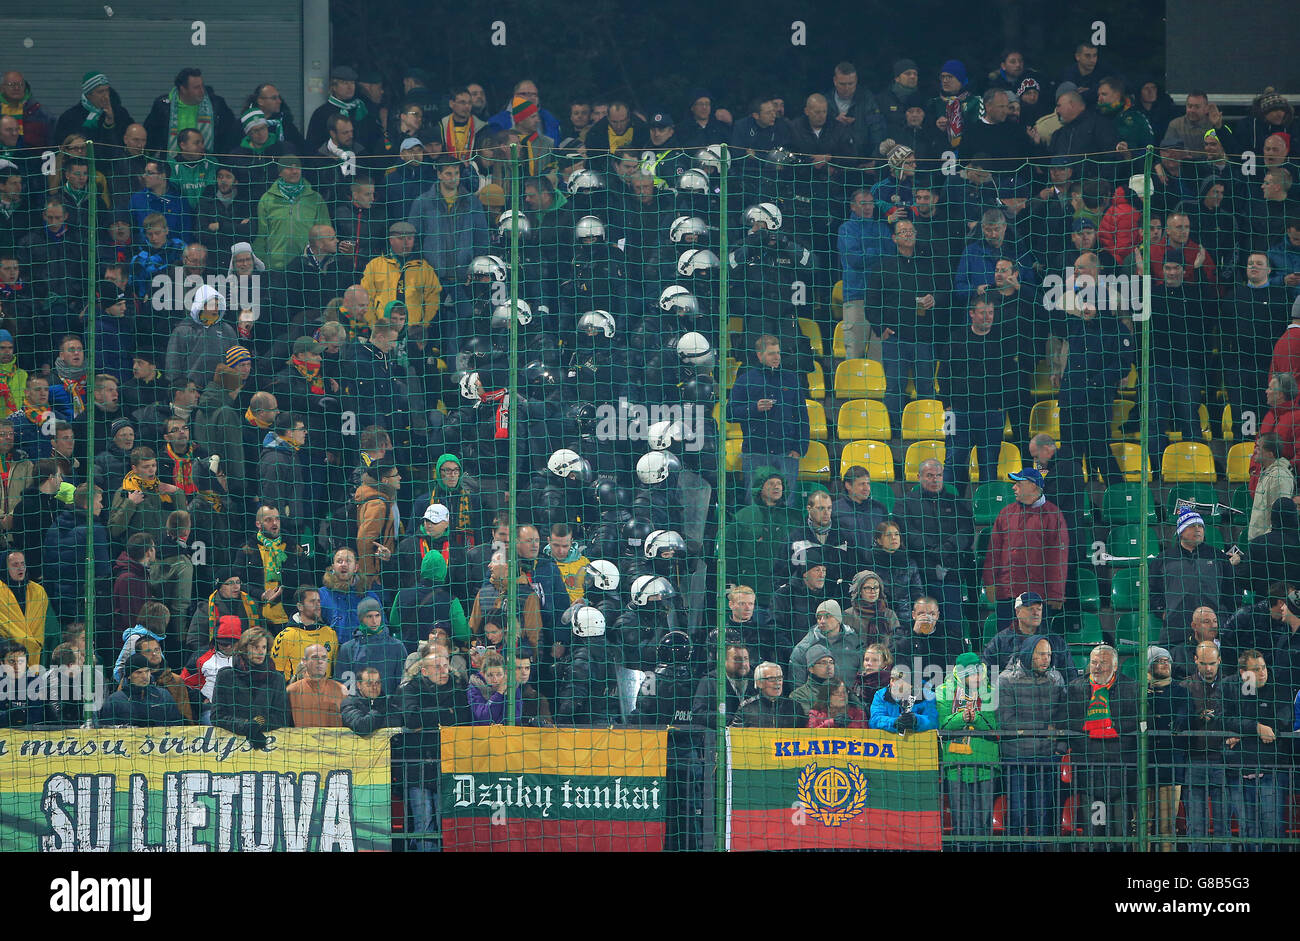 La police anti-émeute a séparé les fans de Lituanie et d'Angleterre dans les tribunes lors du match de qualification de l'UEFA European Championship au stade LFF, Vilnius, Lituanie. Banque D'Images